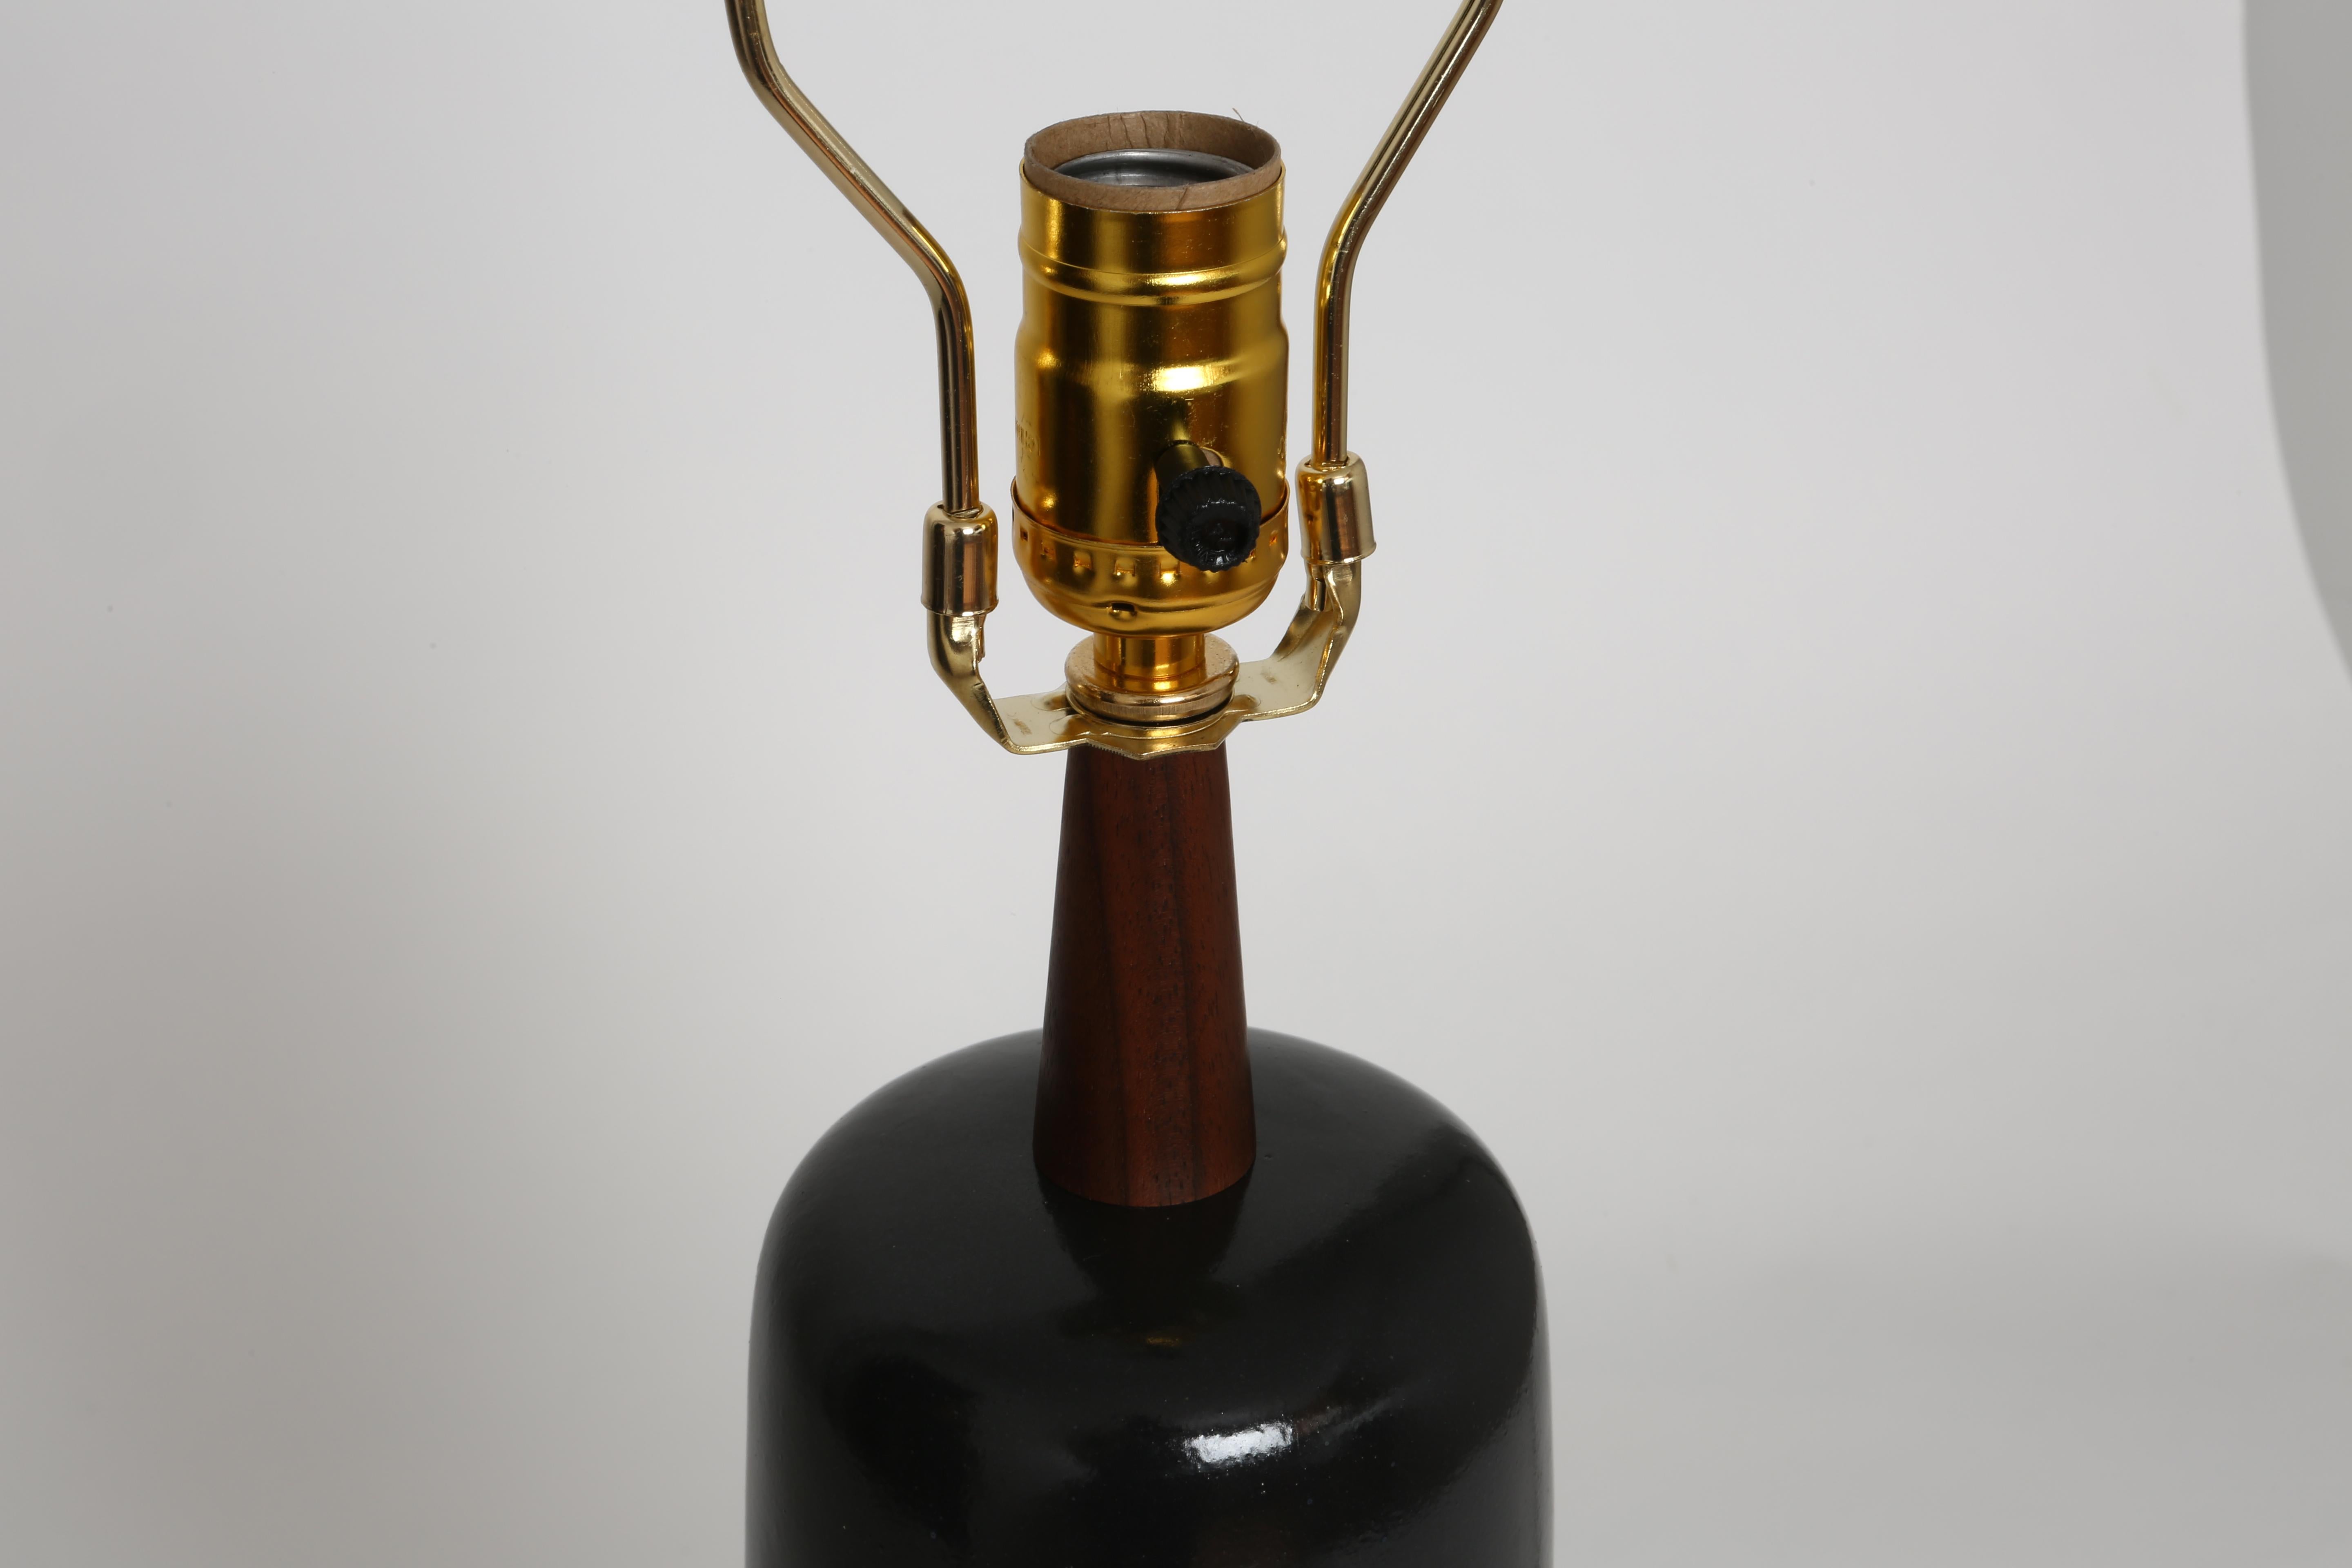 Gordon Martz ceramic table lamp in black.